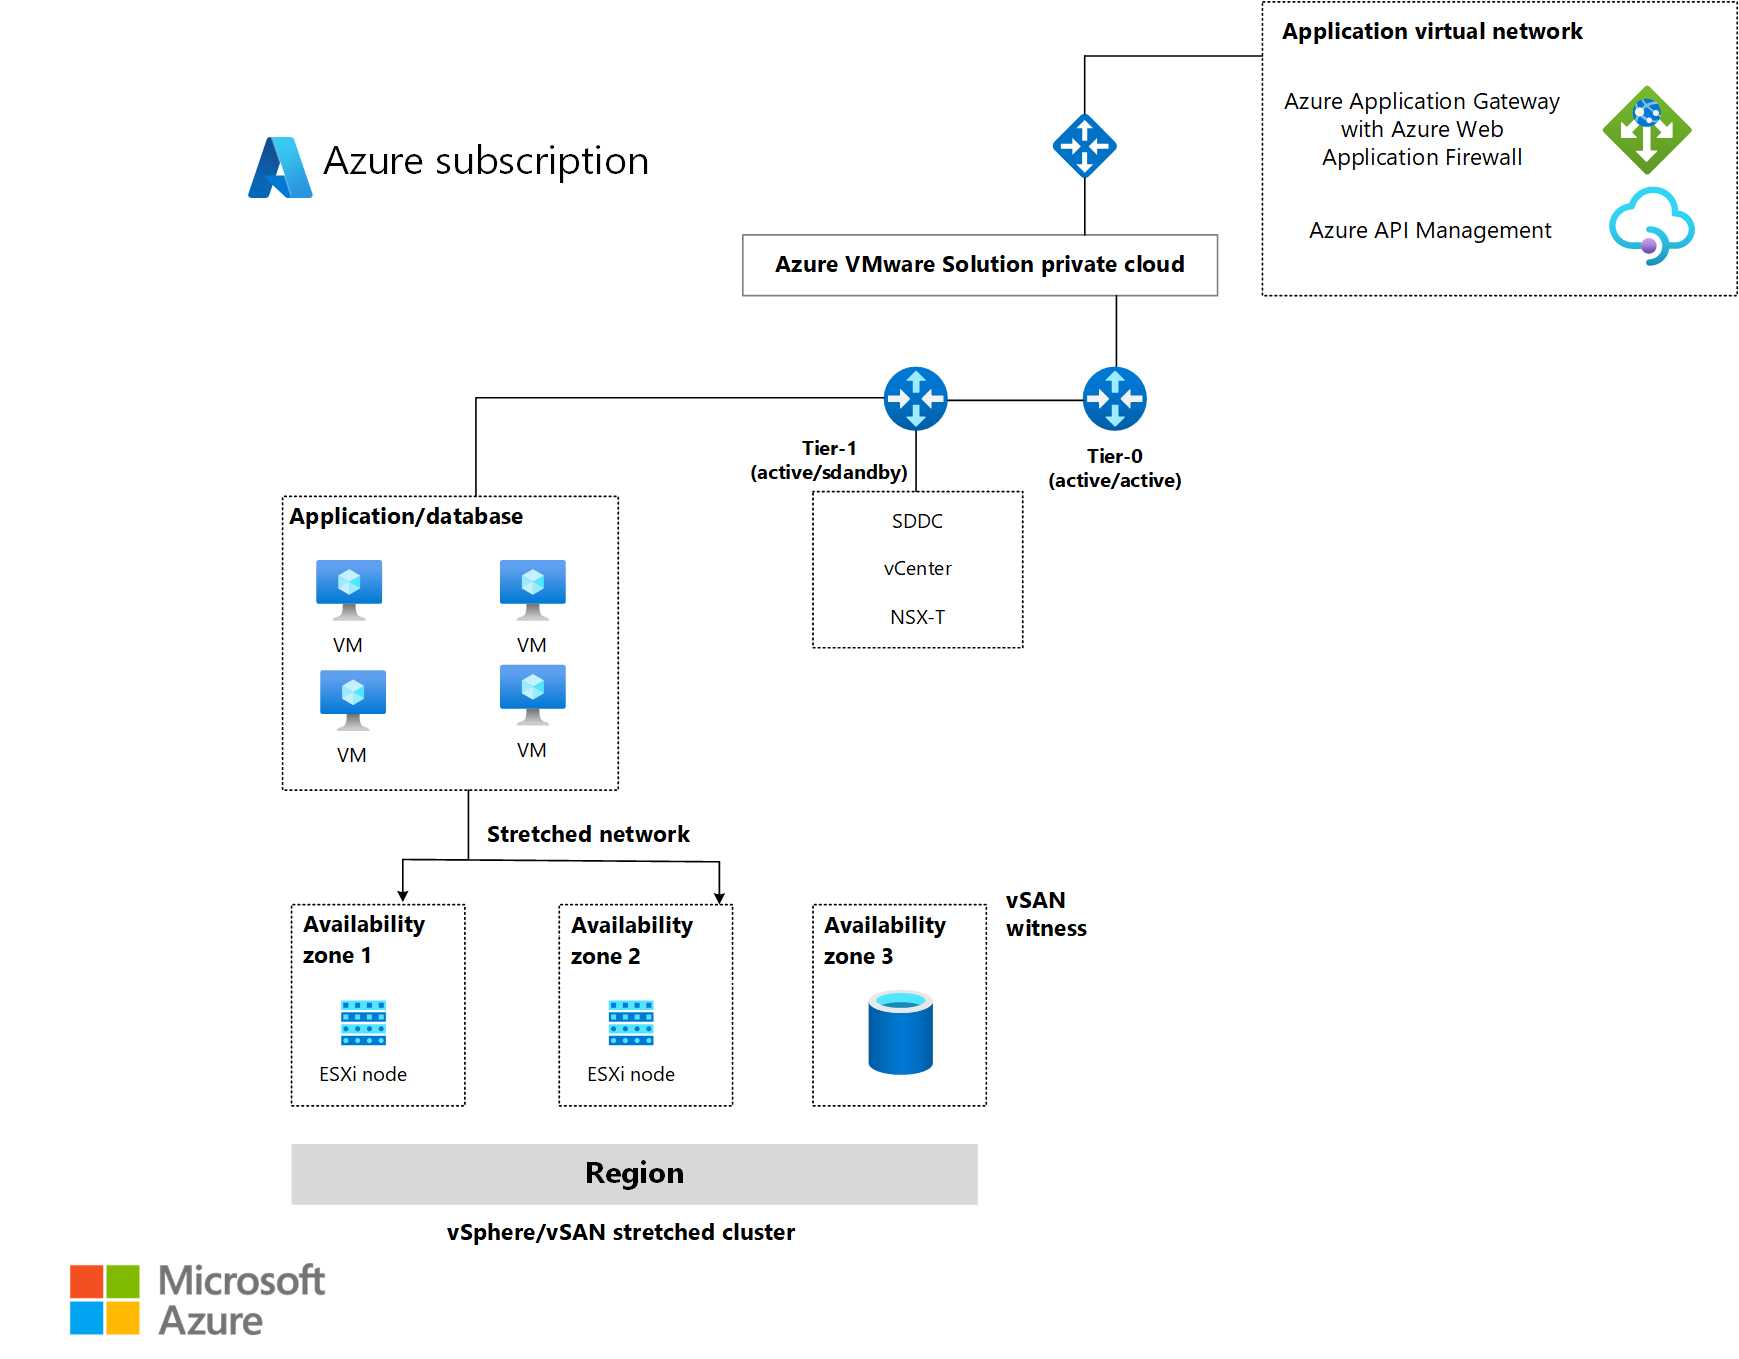 Diagramma dell'architettura che illustra come soluzione Azure VMware usa livelli e reti estese.